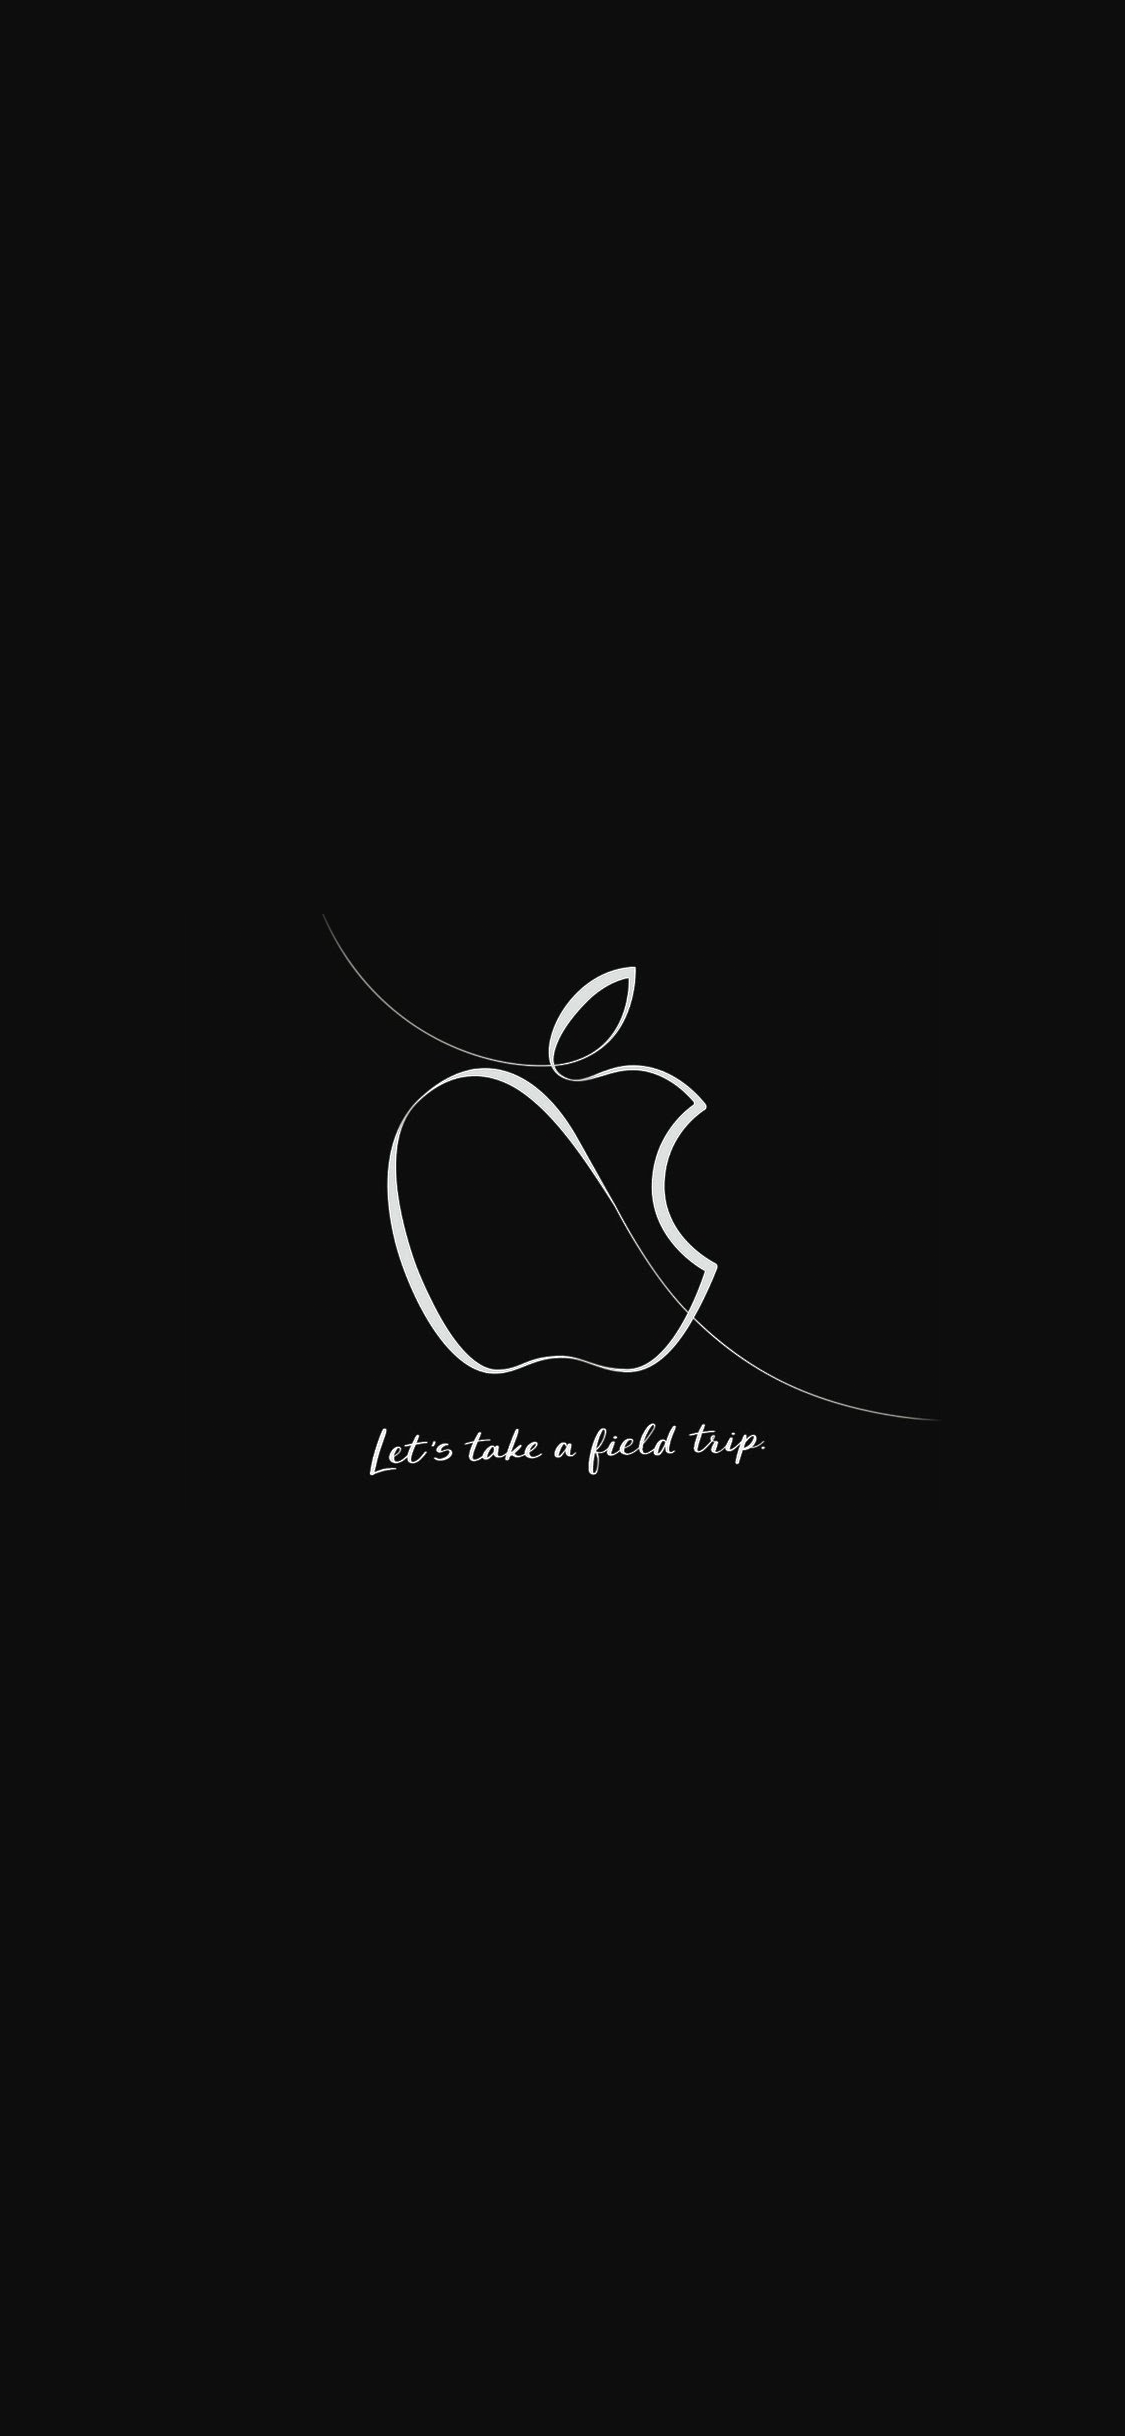 壁紙 Apple製品に似合う壁紙 18年3月appleスペシャルイベント編 私設apple委員会